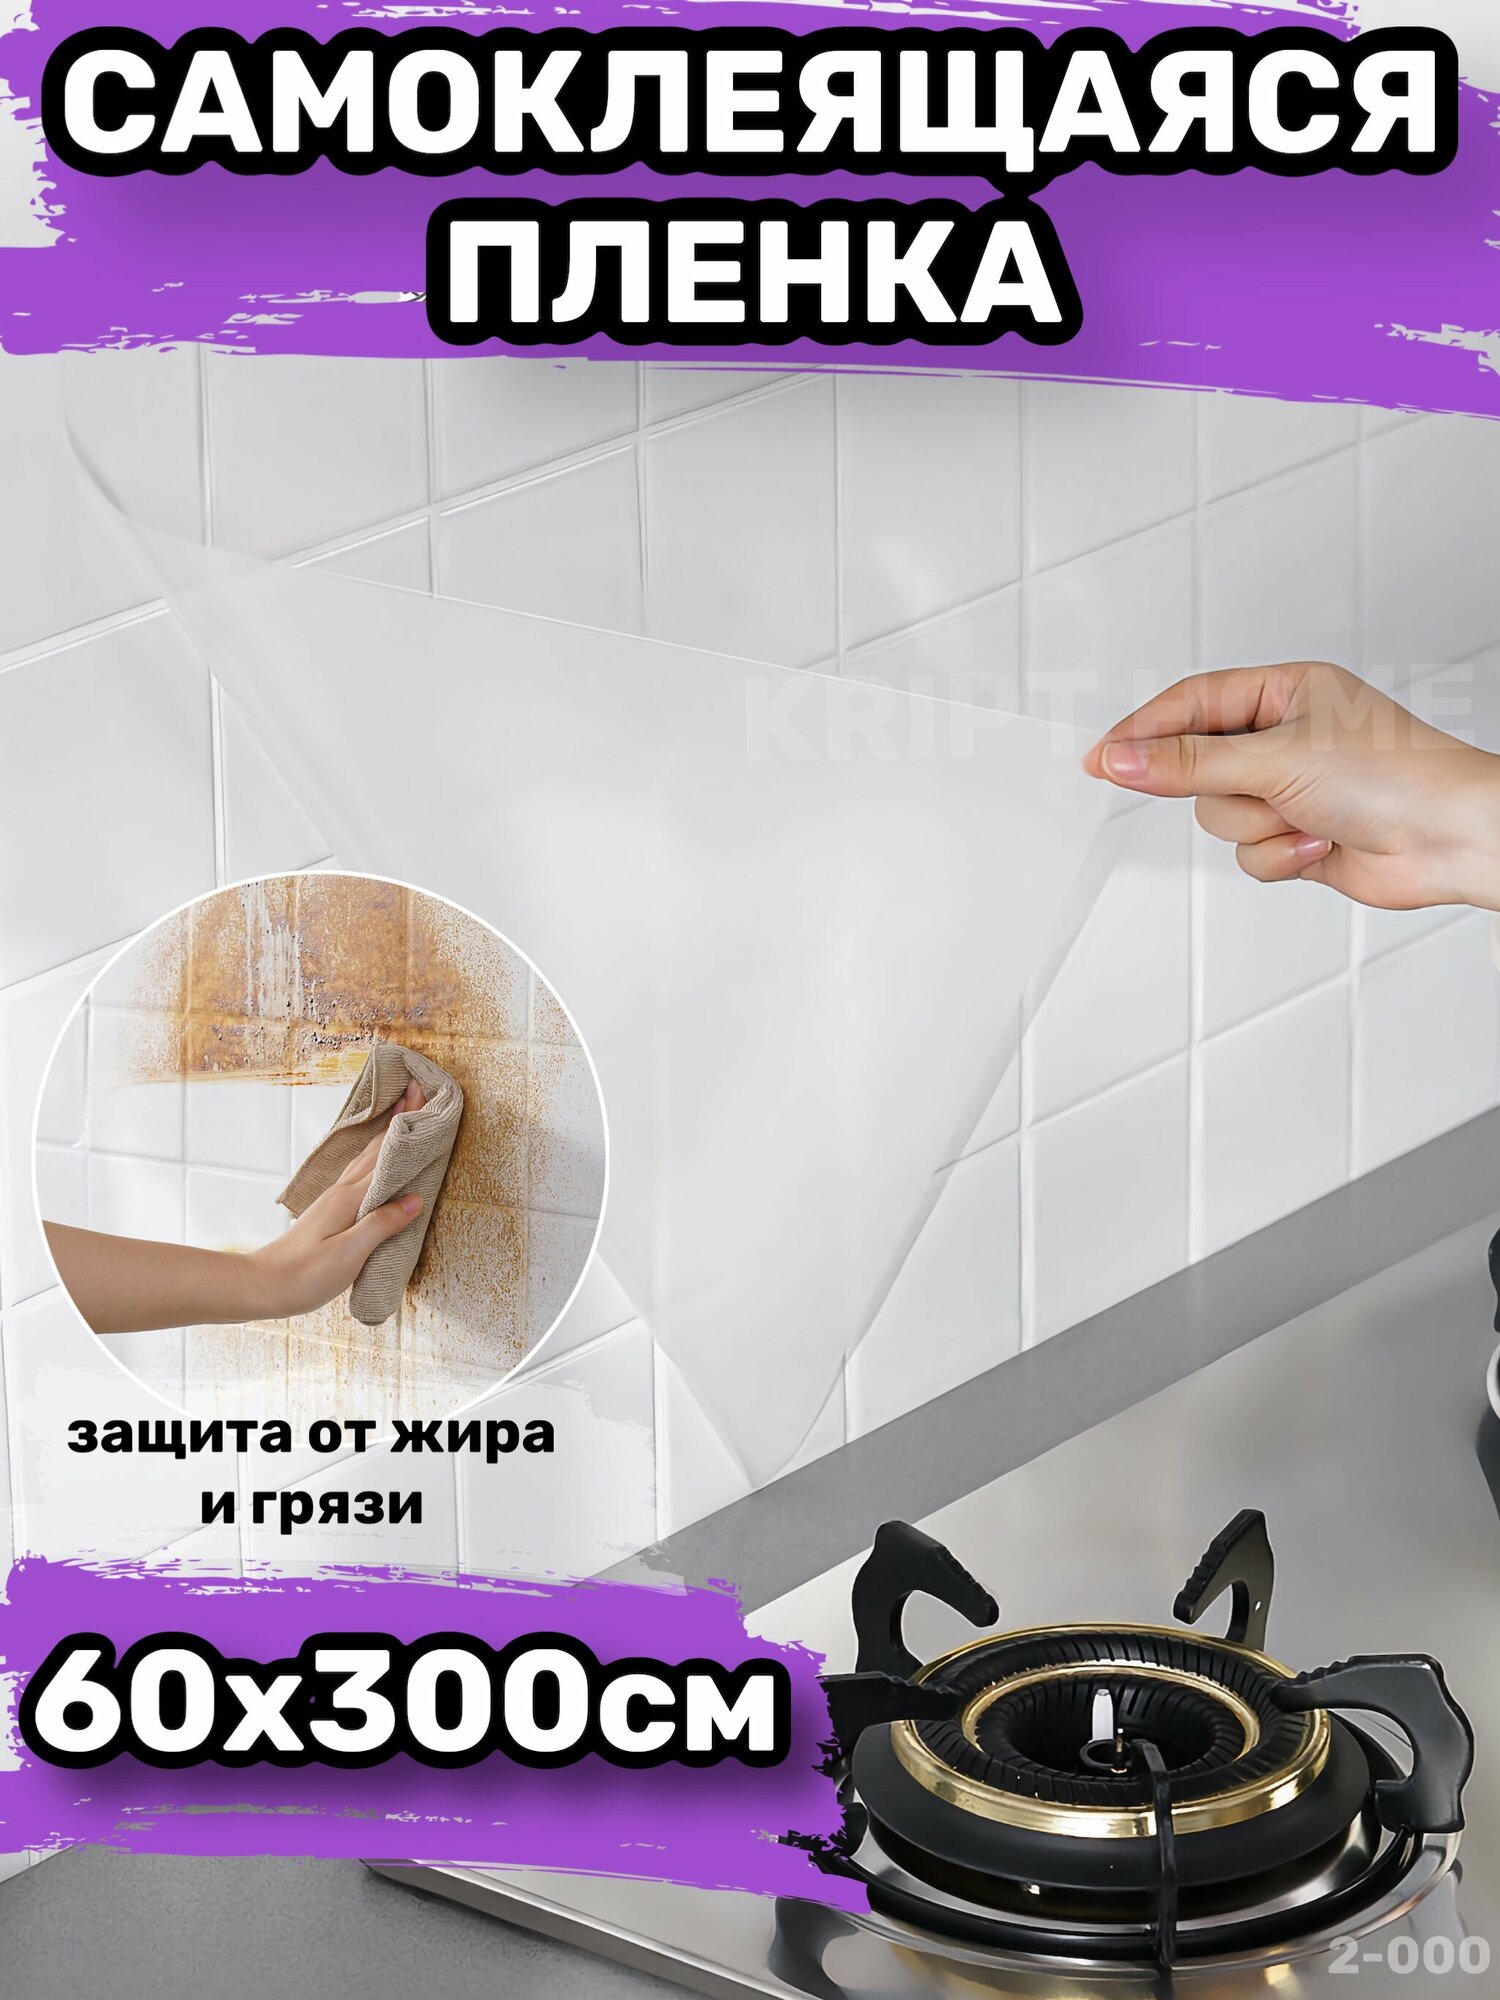 Самоклеящаяся пленка для мебели кухни стен обои самоклейка (2-000) — купить  в интернет-магазине по низкой цене на Яндекс Маркете